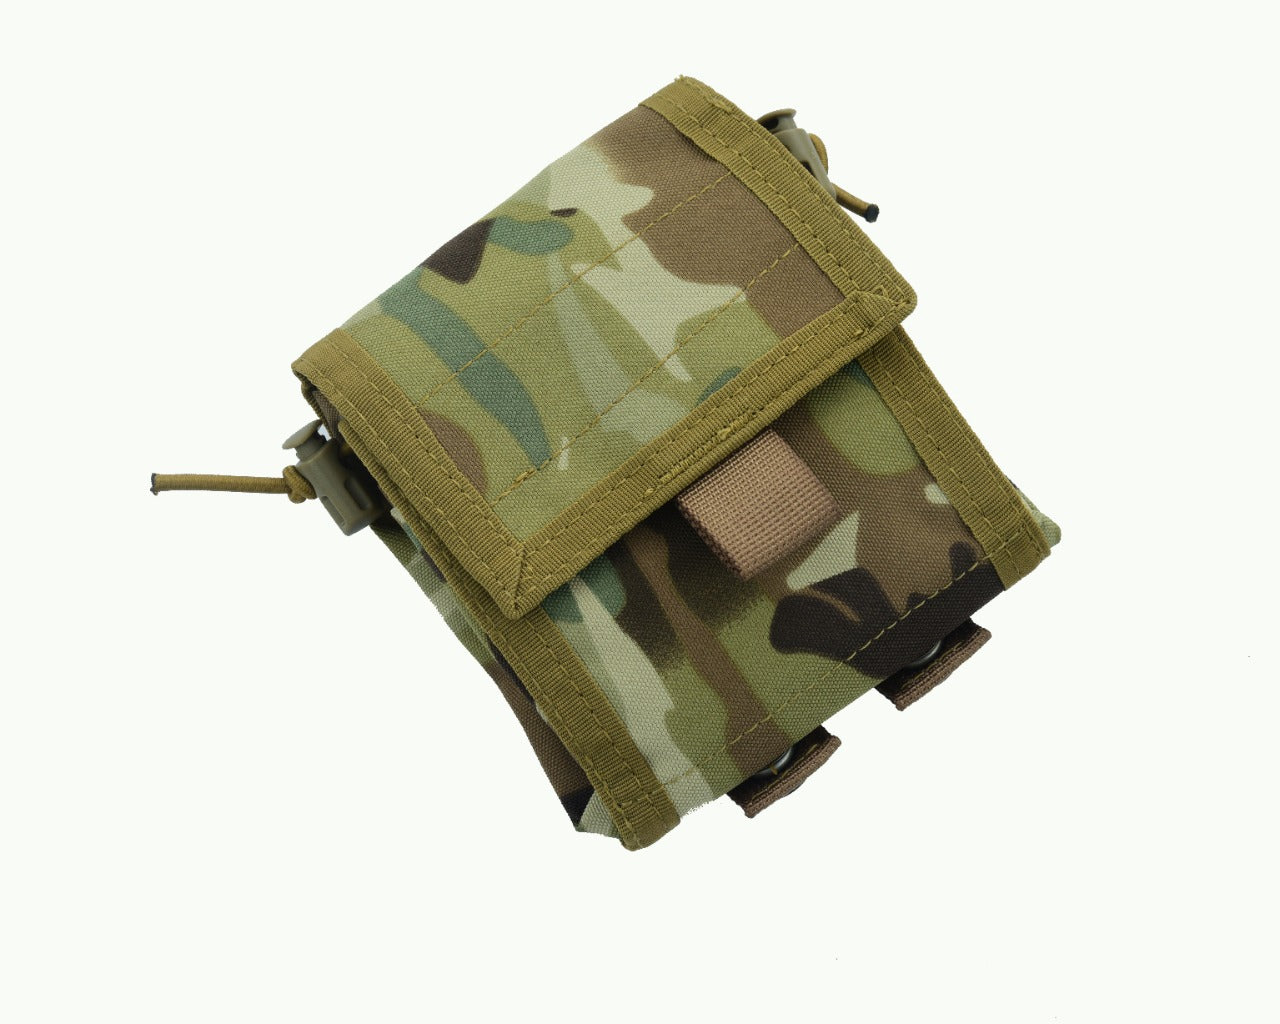 SHE-806 Molle Folding Dump pouch Color Multicam